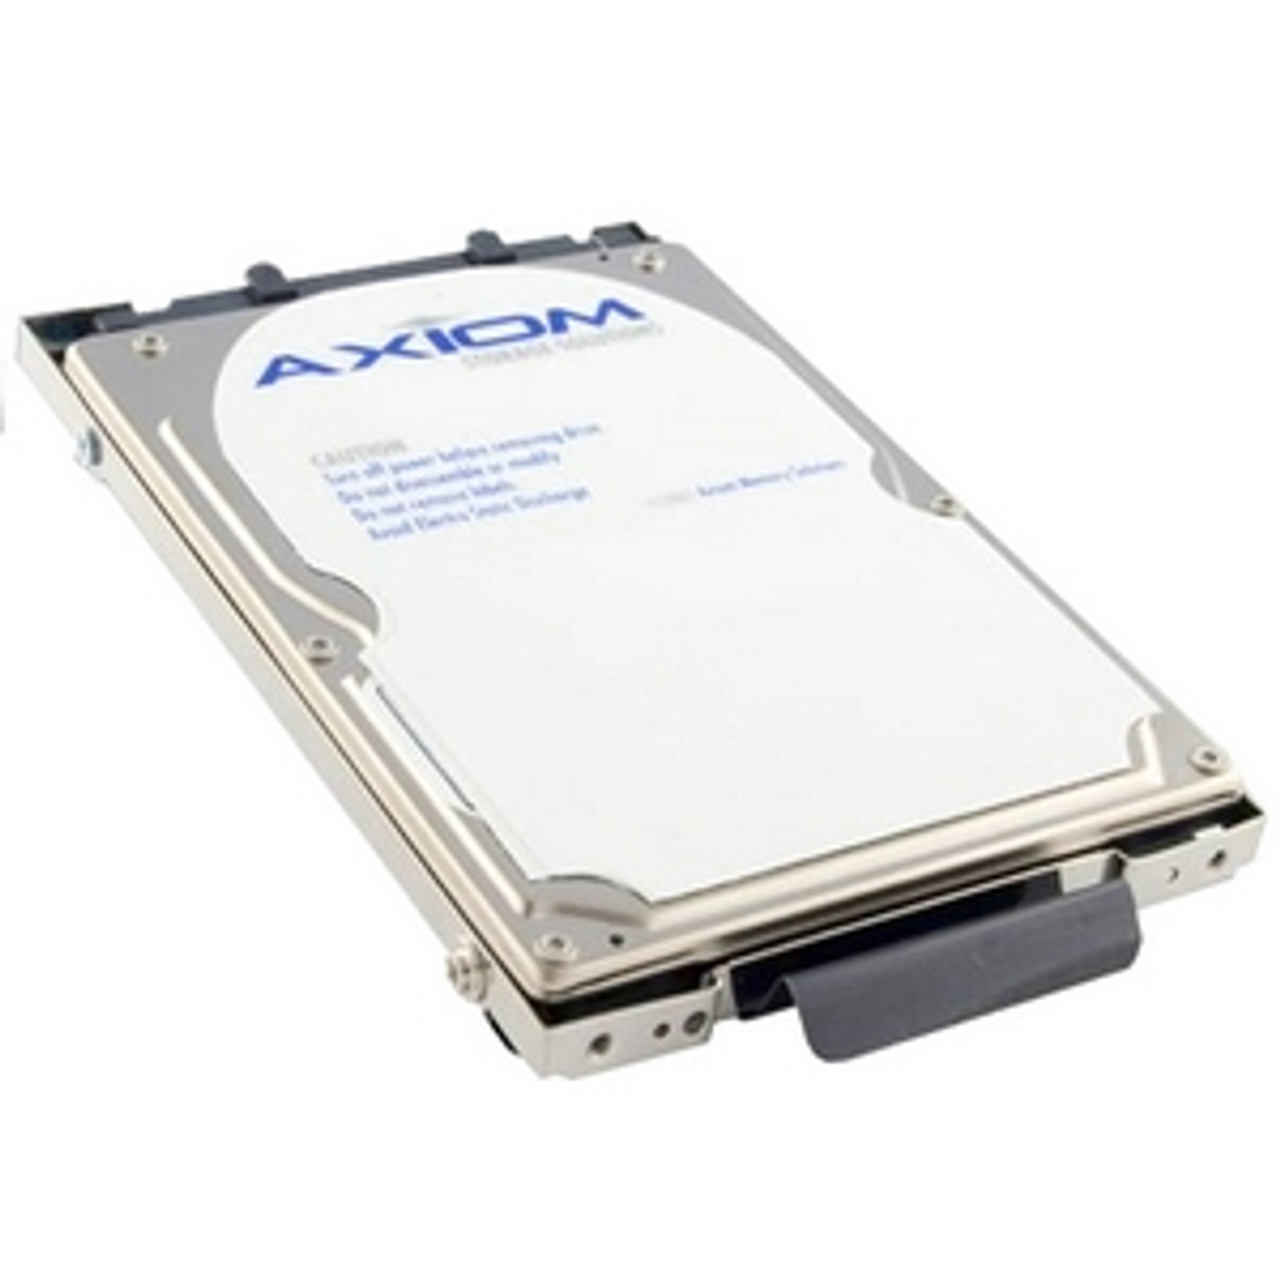 AXC-1480 - Axiom 80 GB 2.5 Plug-in Module Hard Drive - IDE